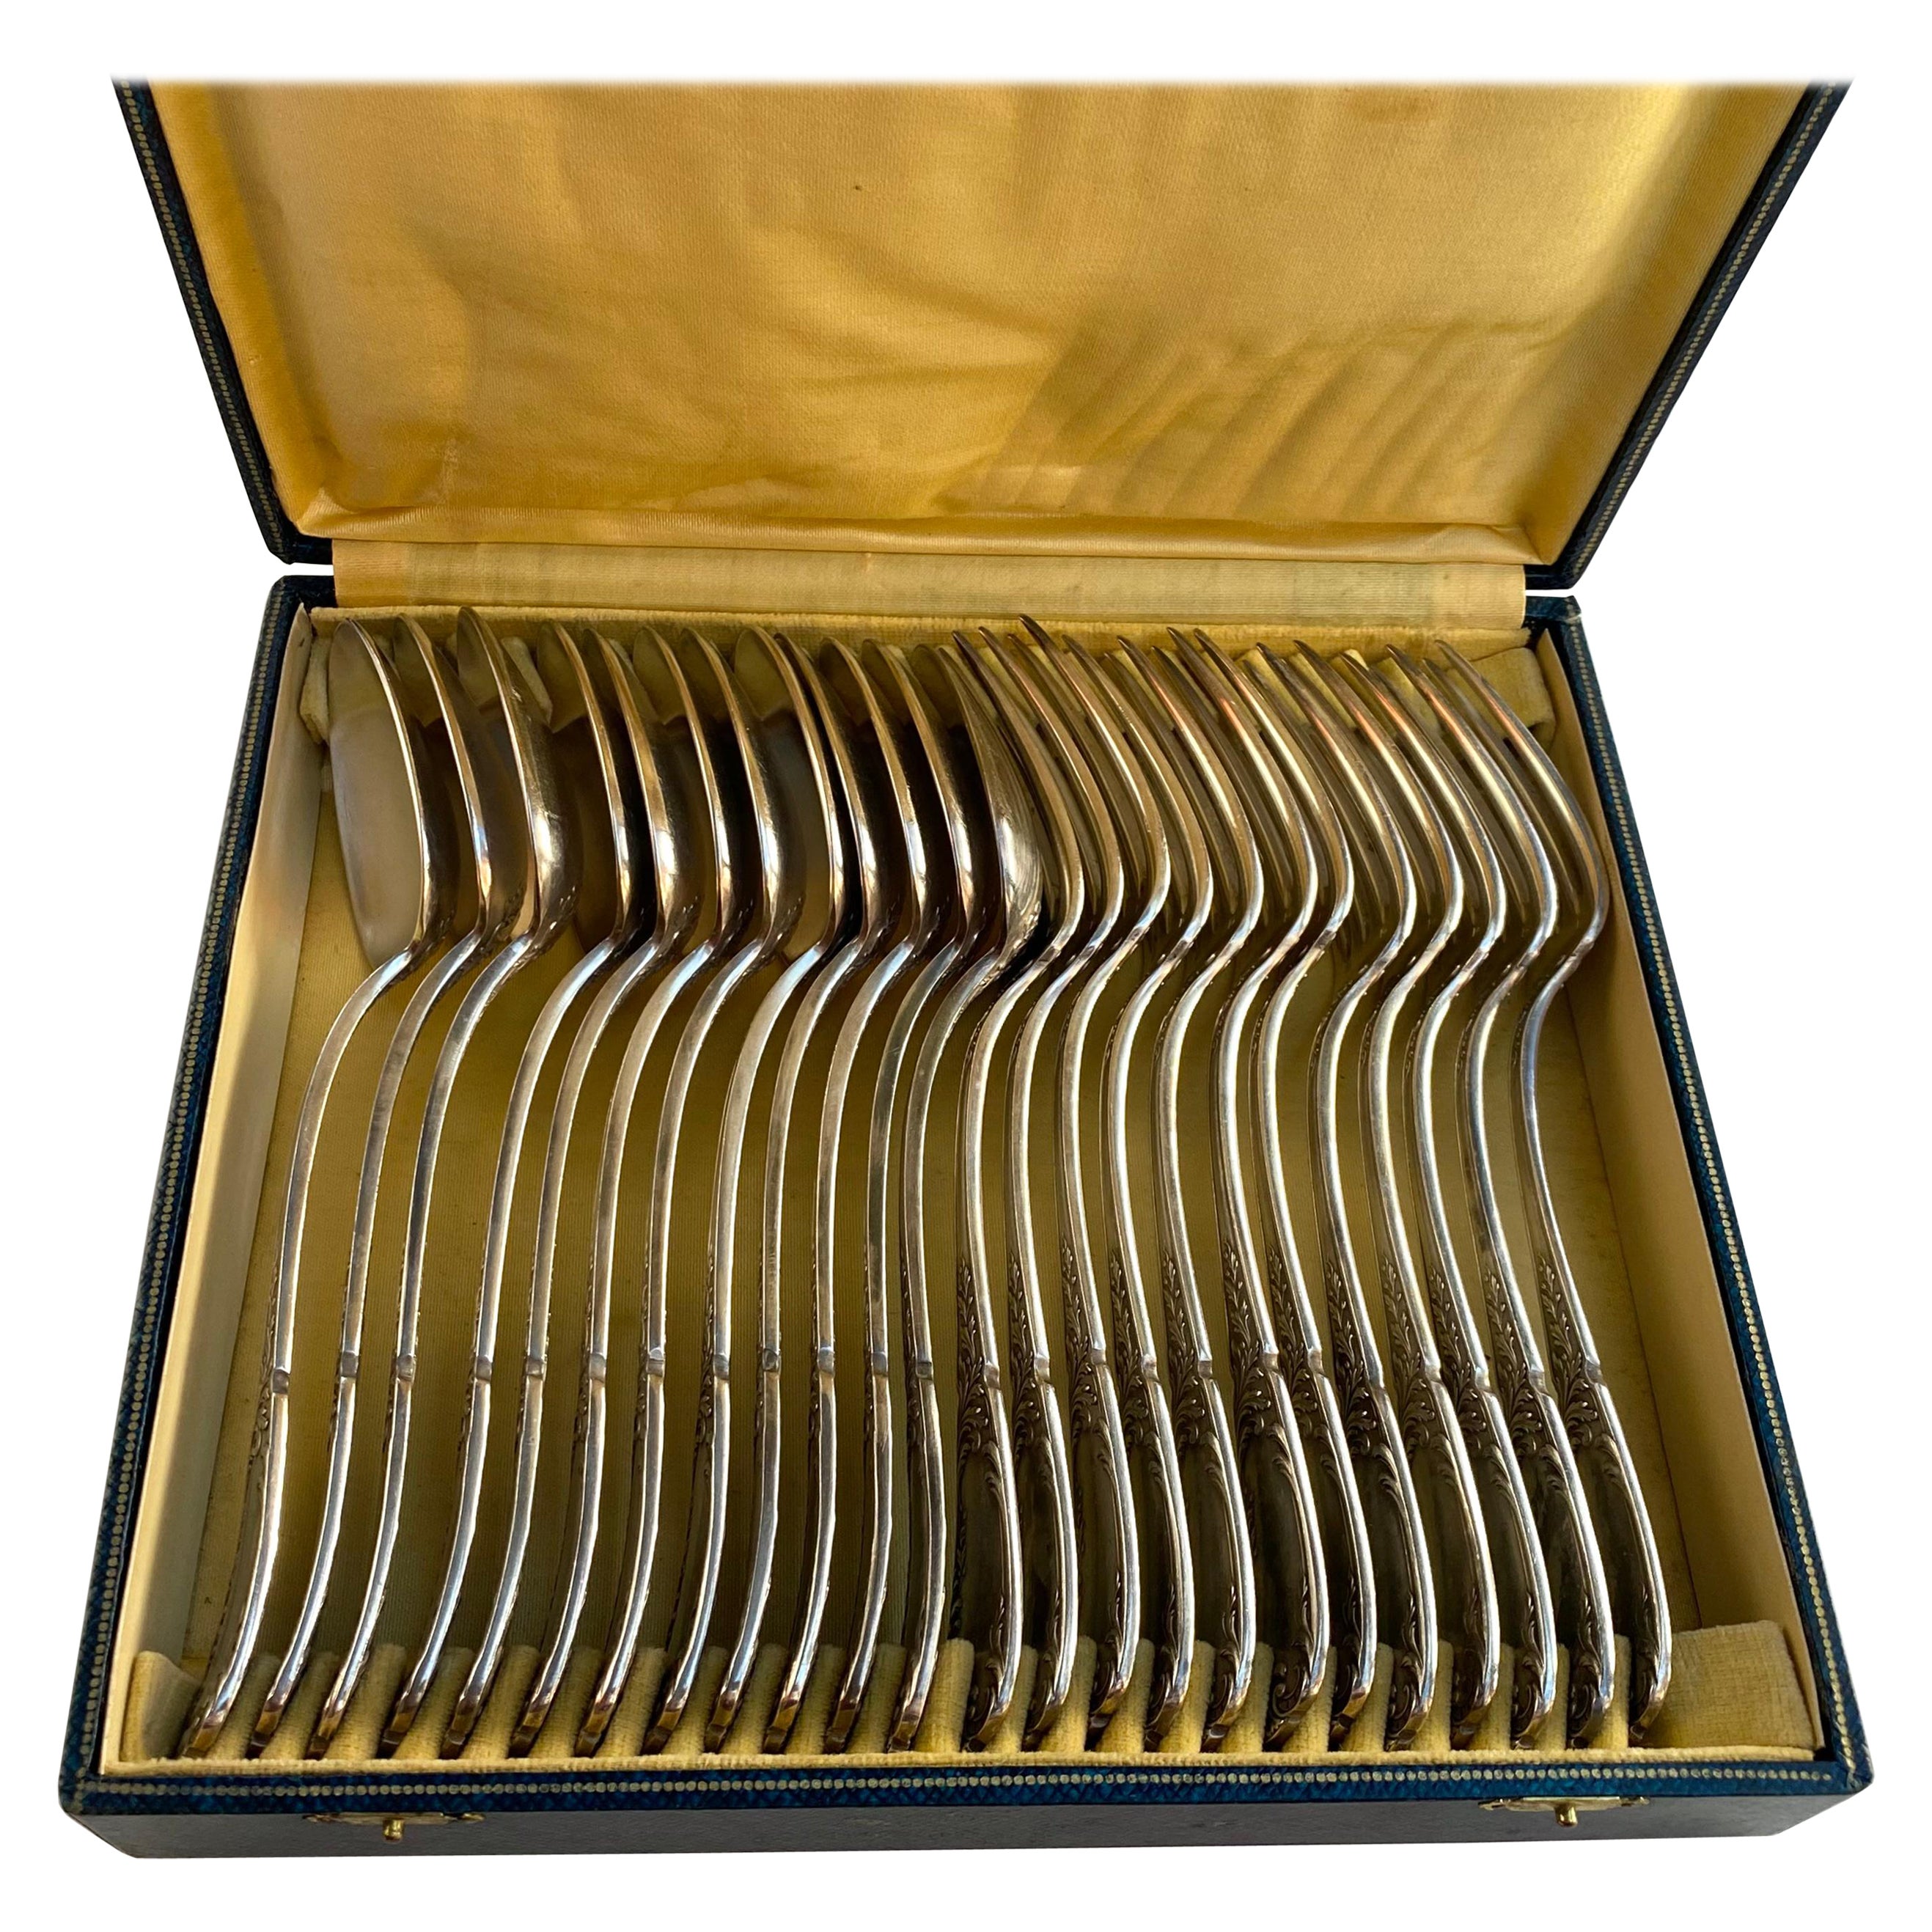 Vintage Silver Plate Utensils 12 Spoons 12 Forks France 1950s For Sale